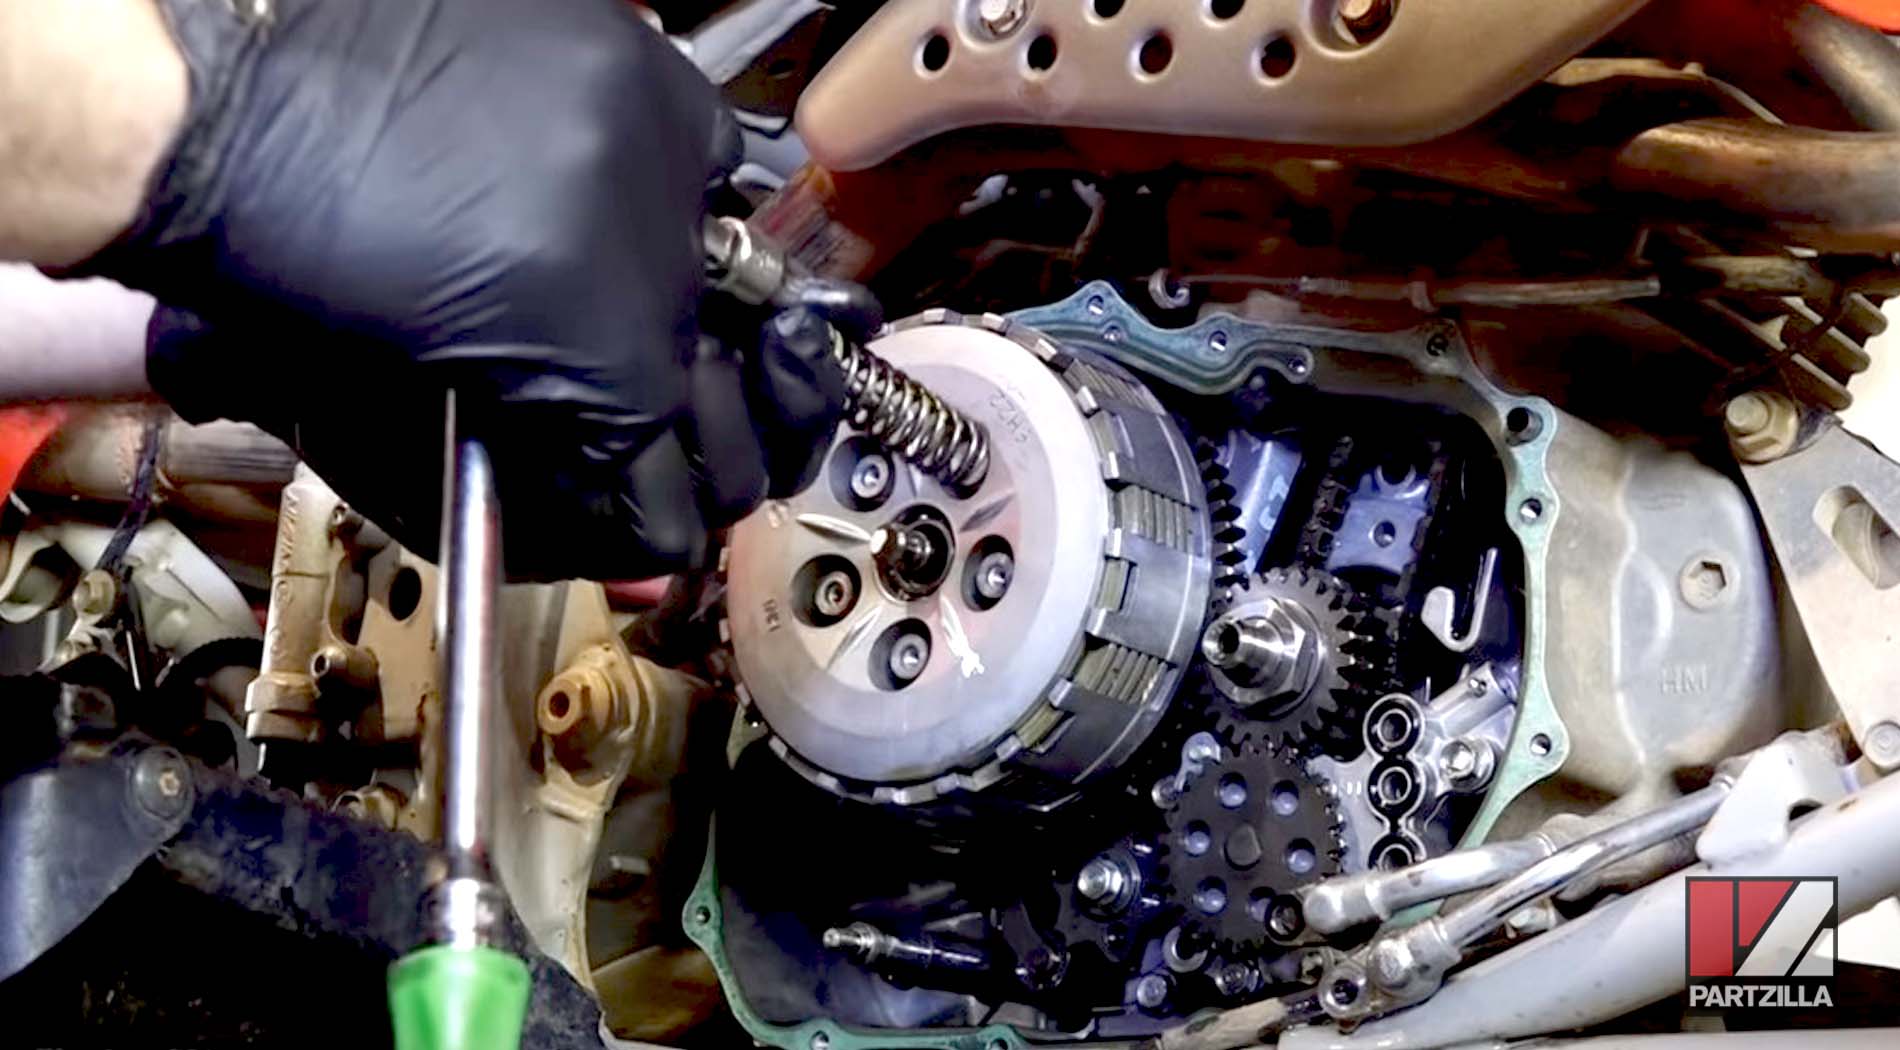 Honda TRX400 clutch springs removal